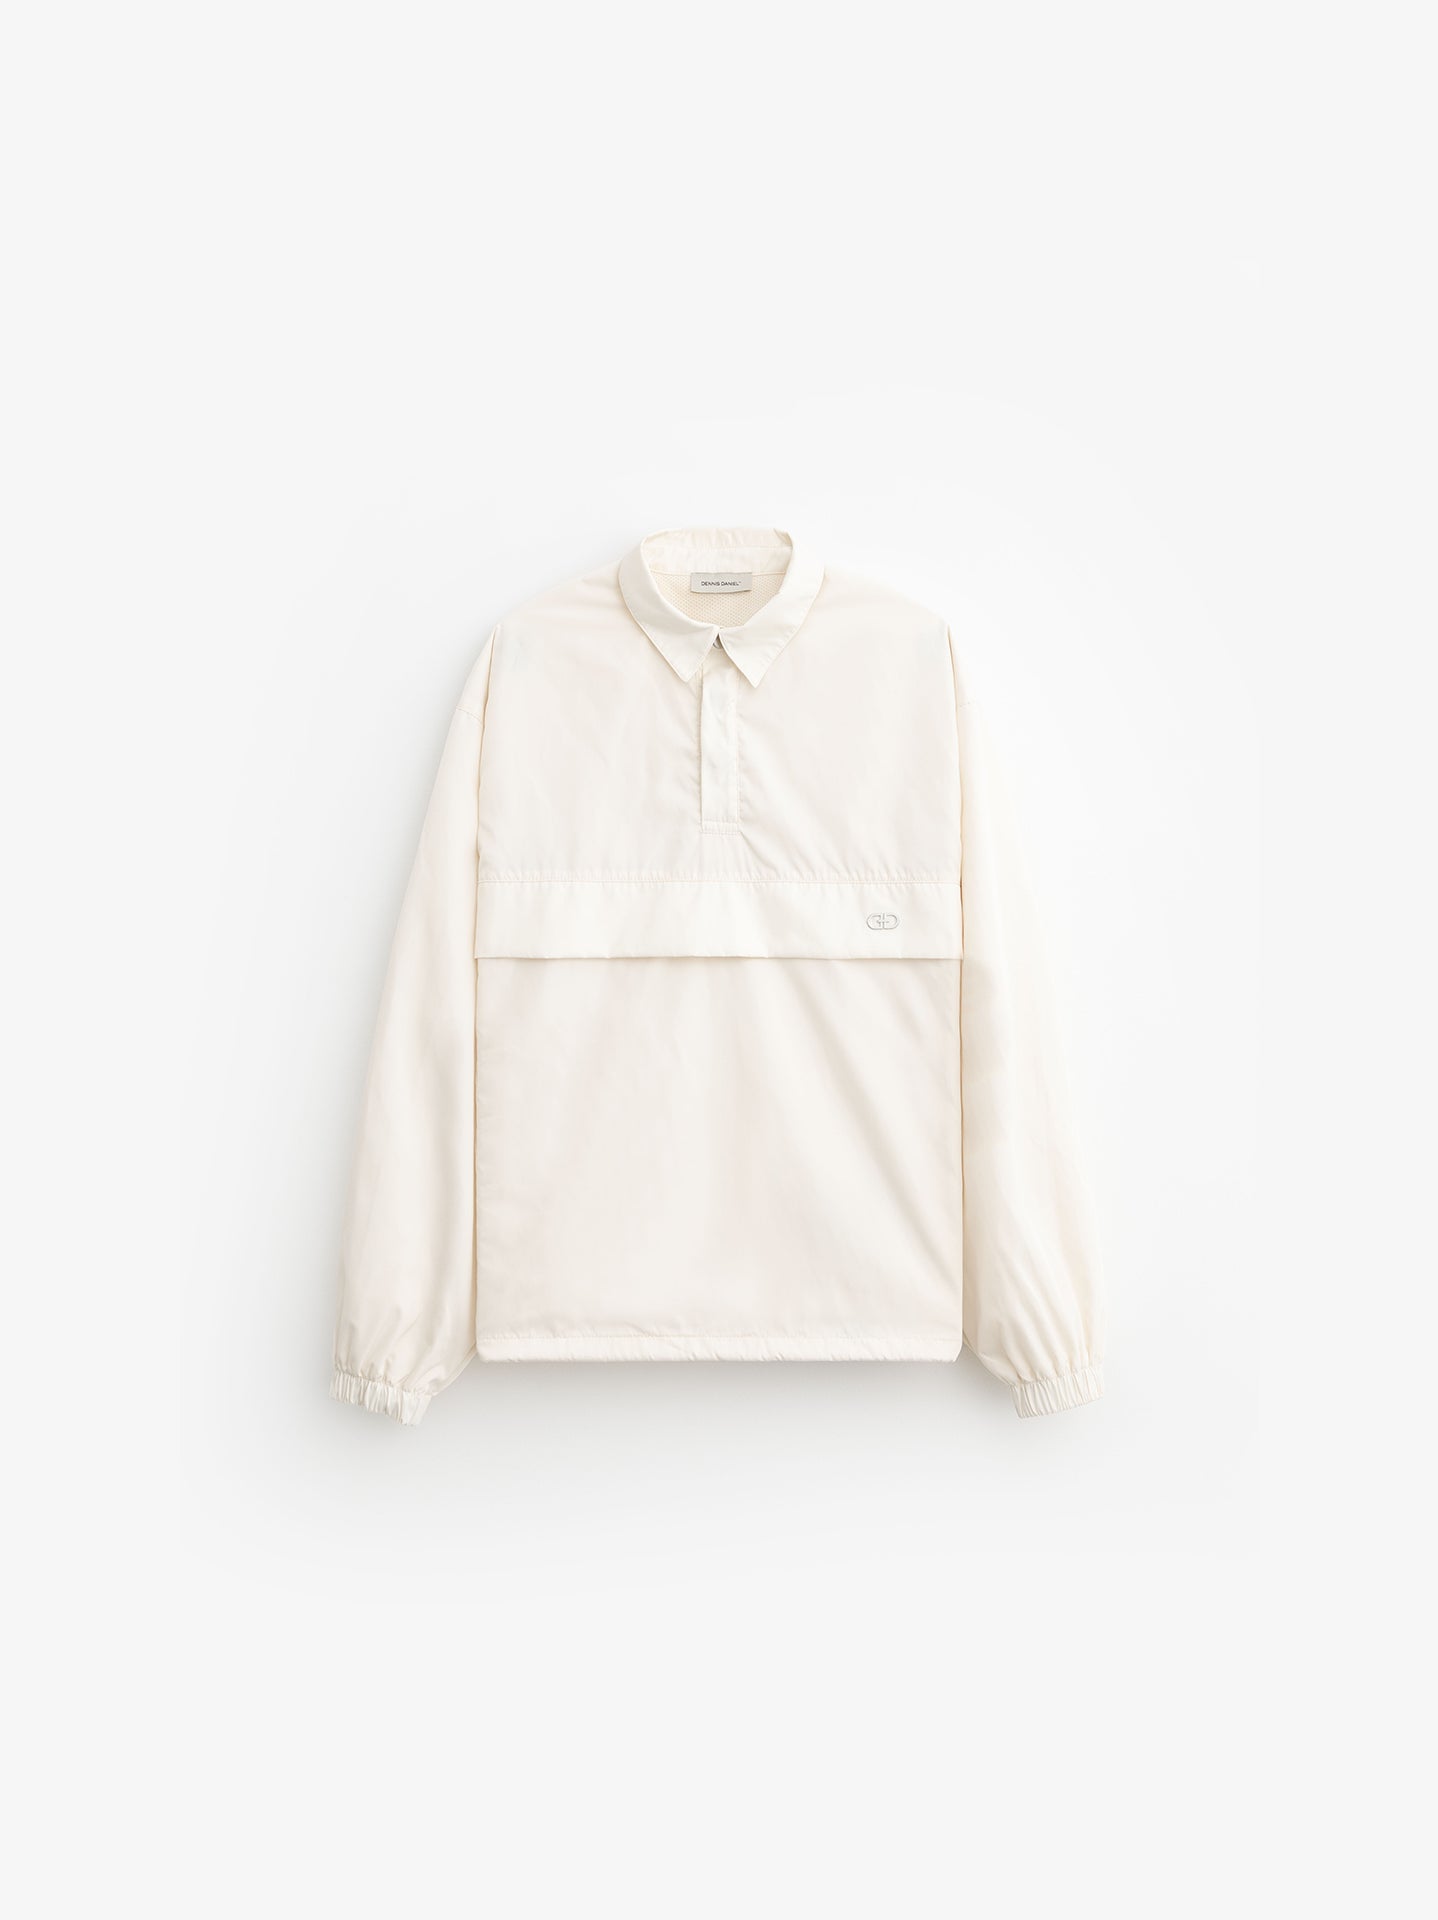 Track Shirt - Cream White